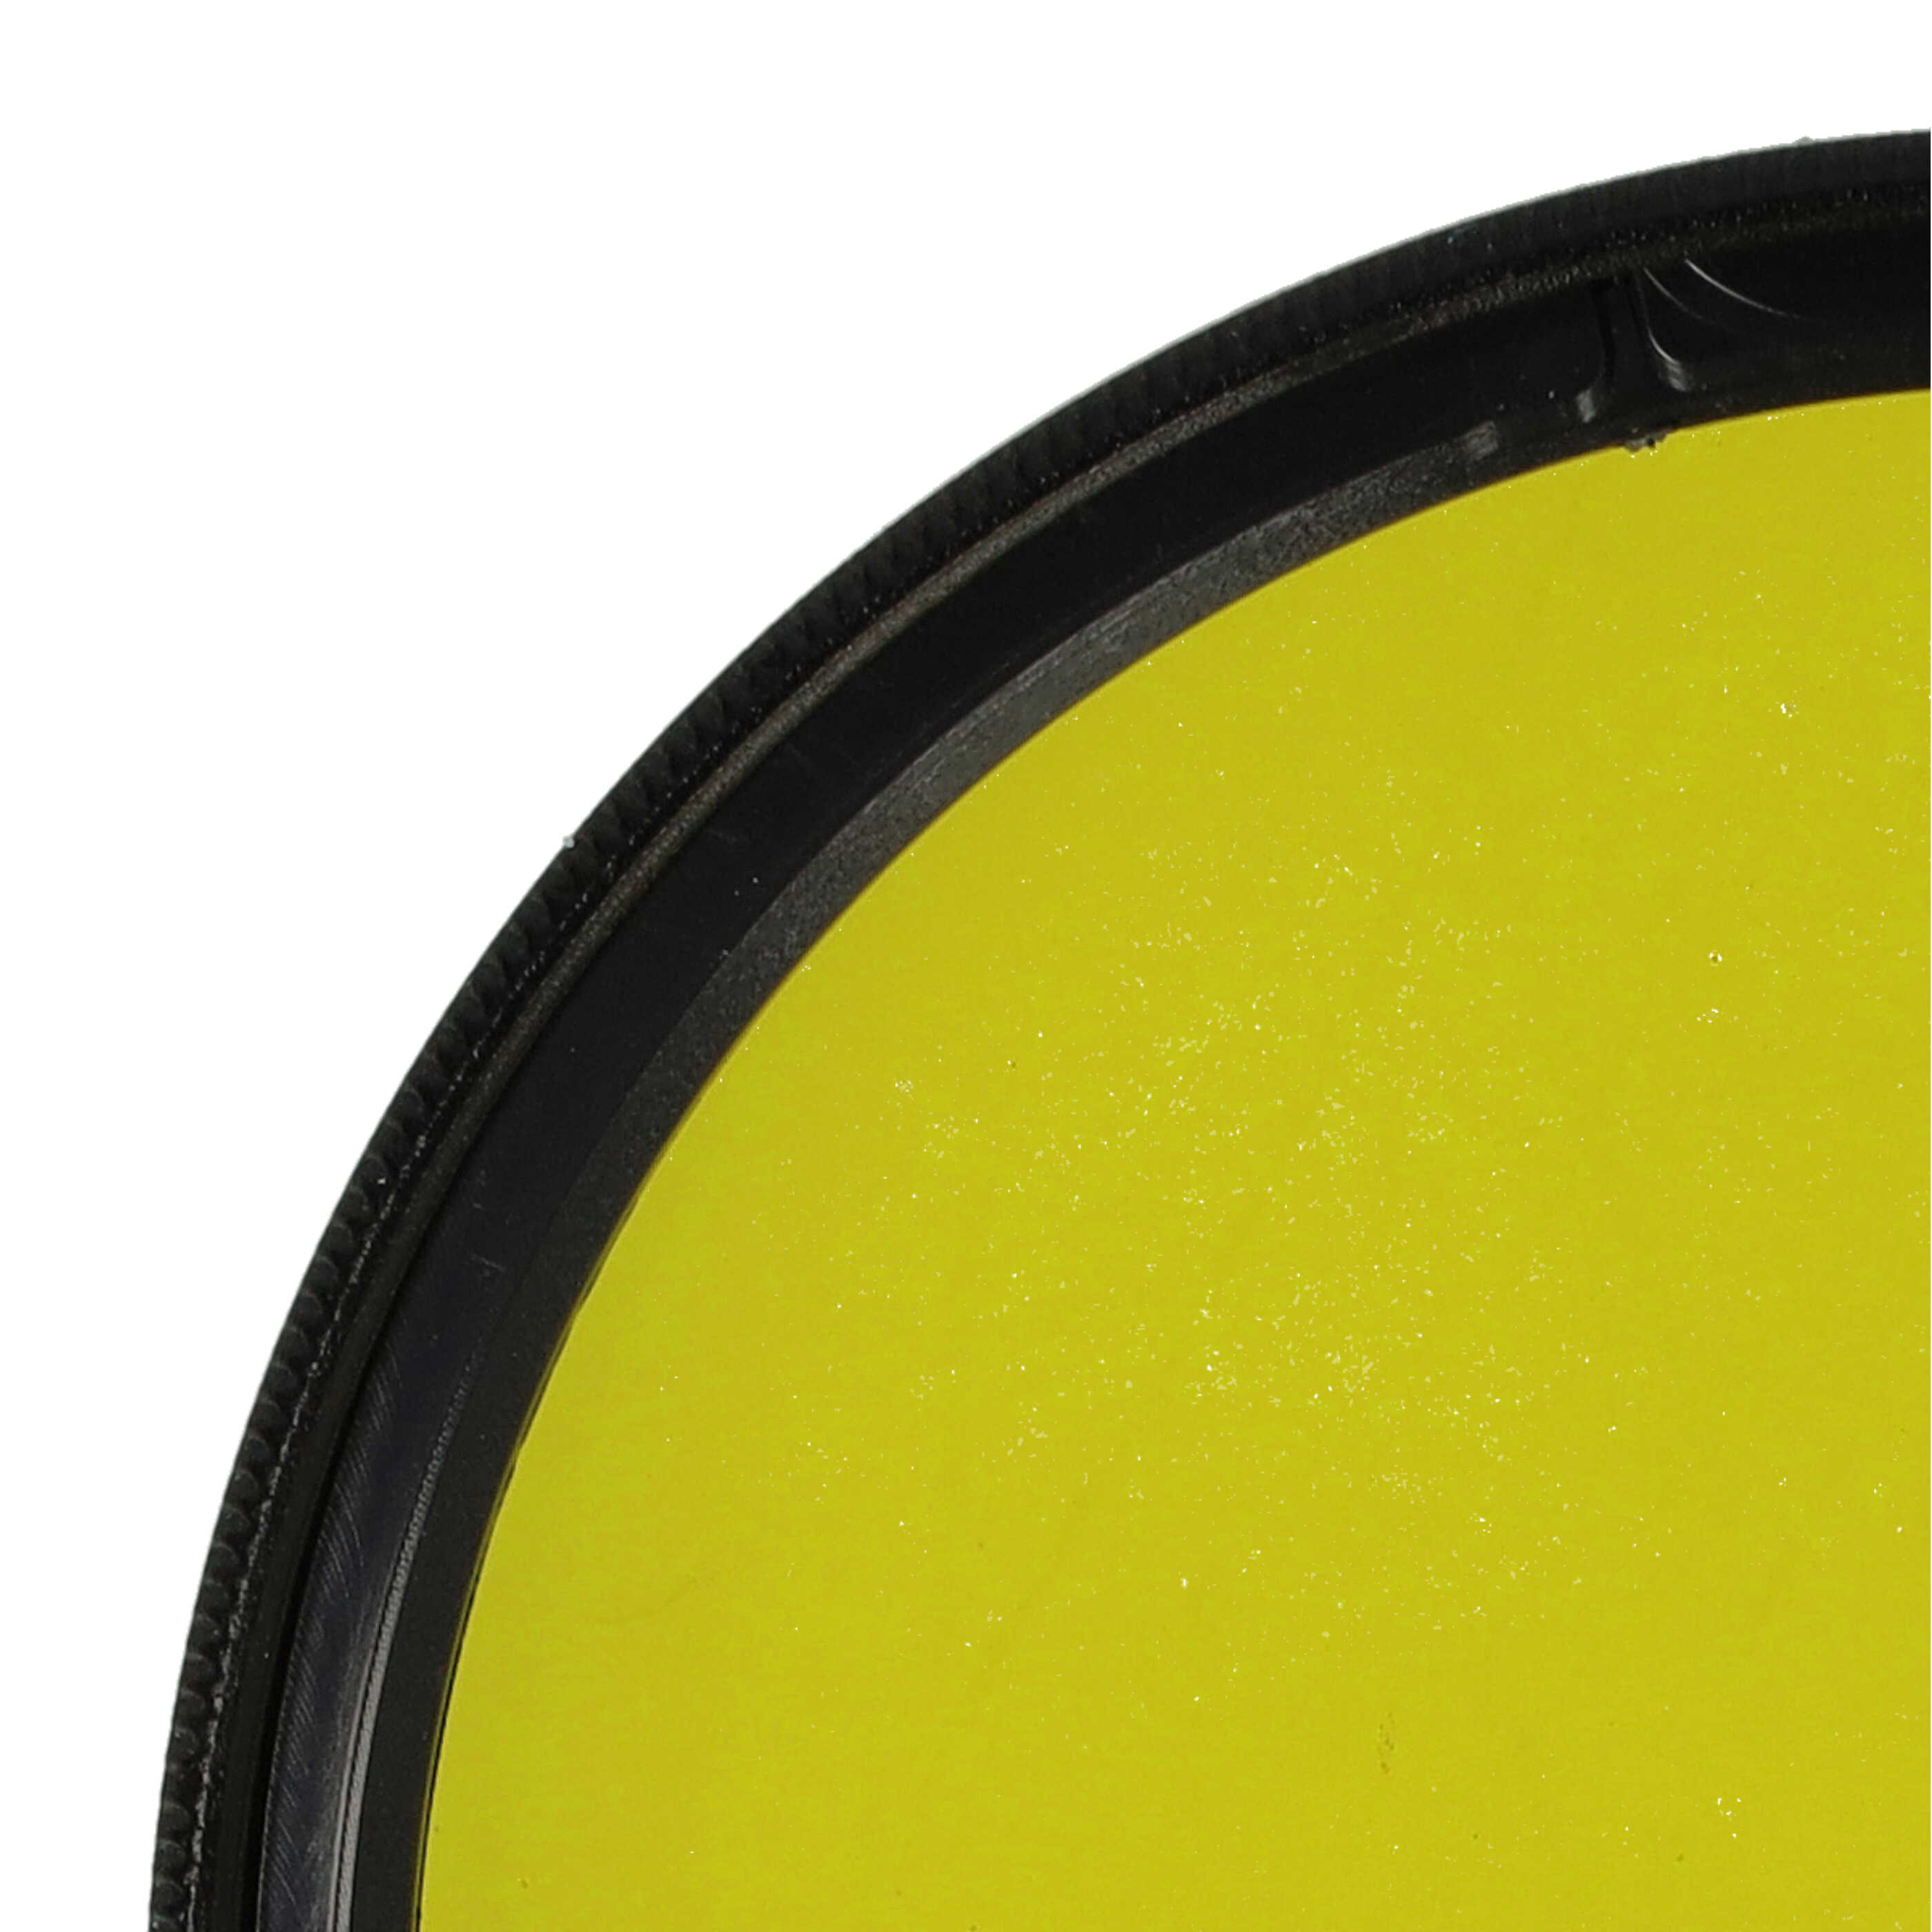 Farbfilter gelb passend für Kamera Objektive mit 58 mm Filtergewinde - Gelbfilter